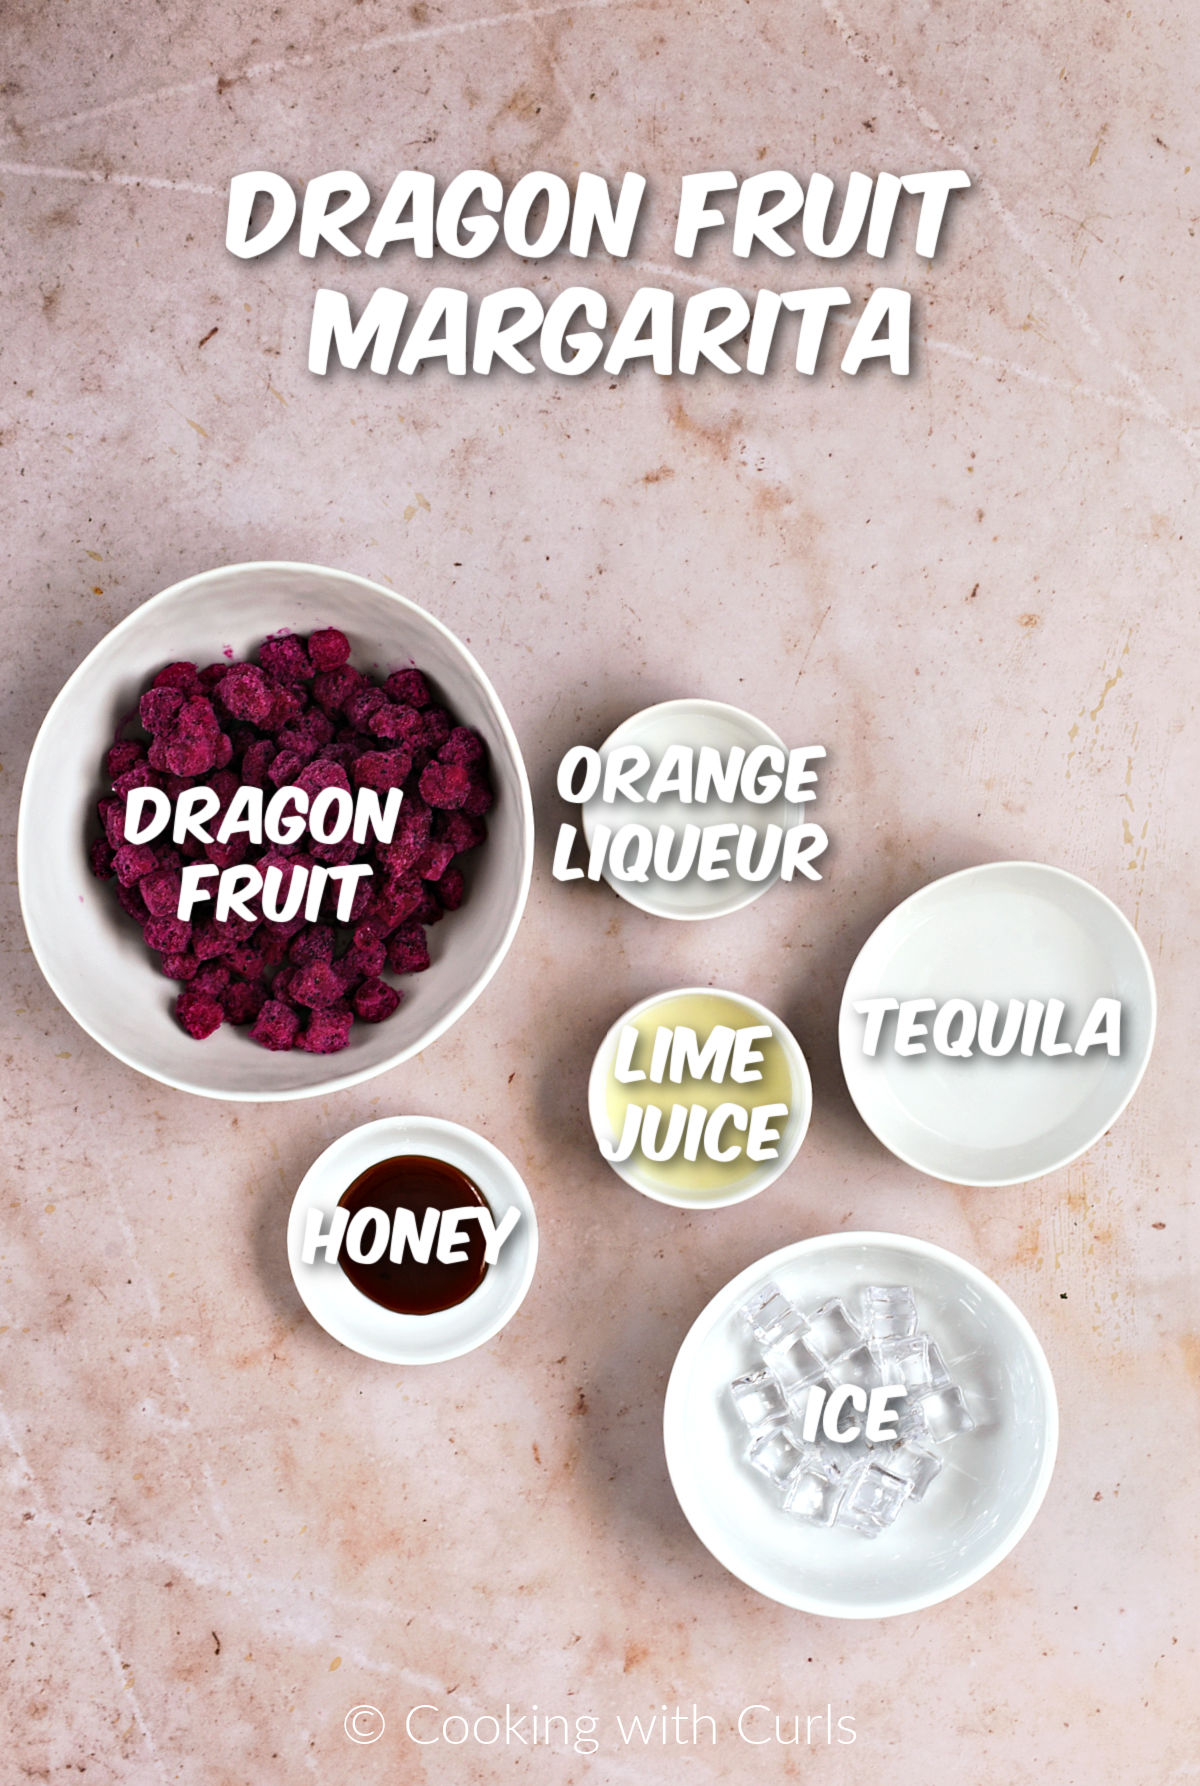 Dragon Fruit Margarita ingredients.